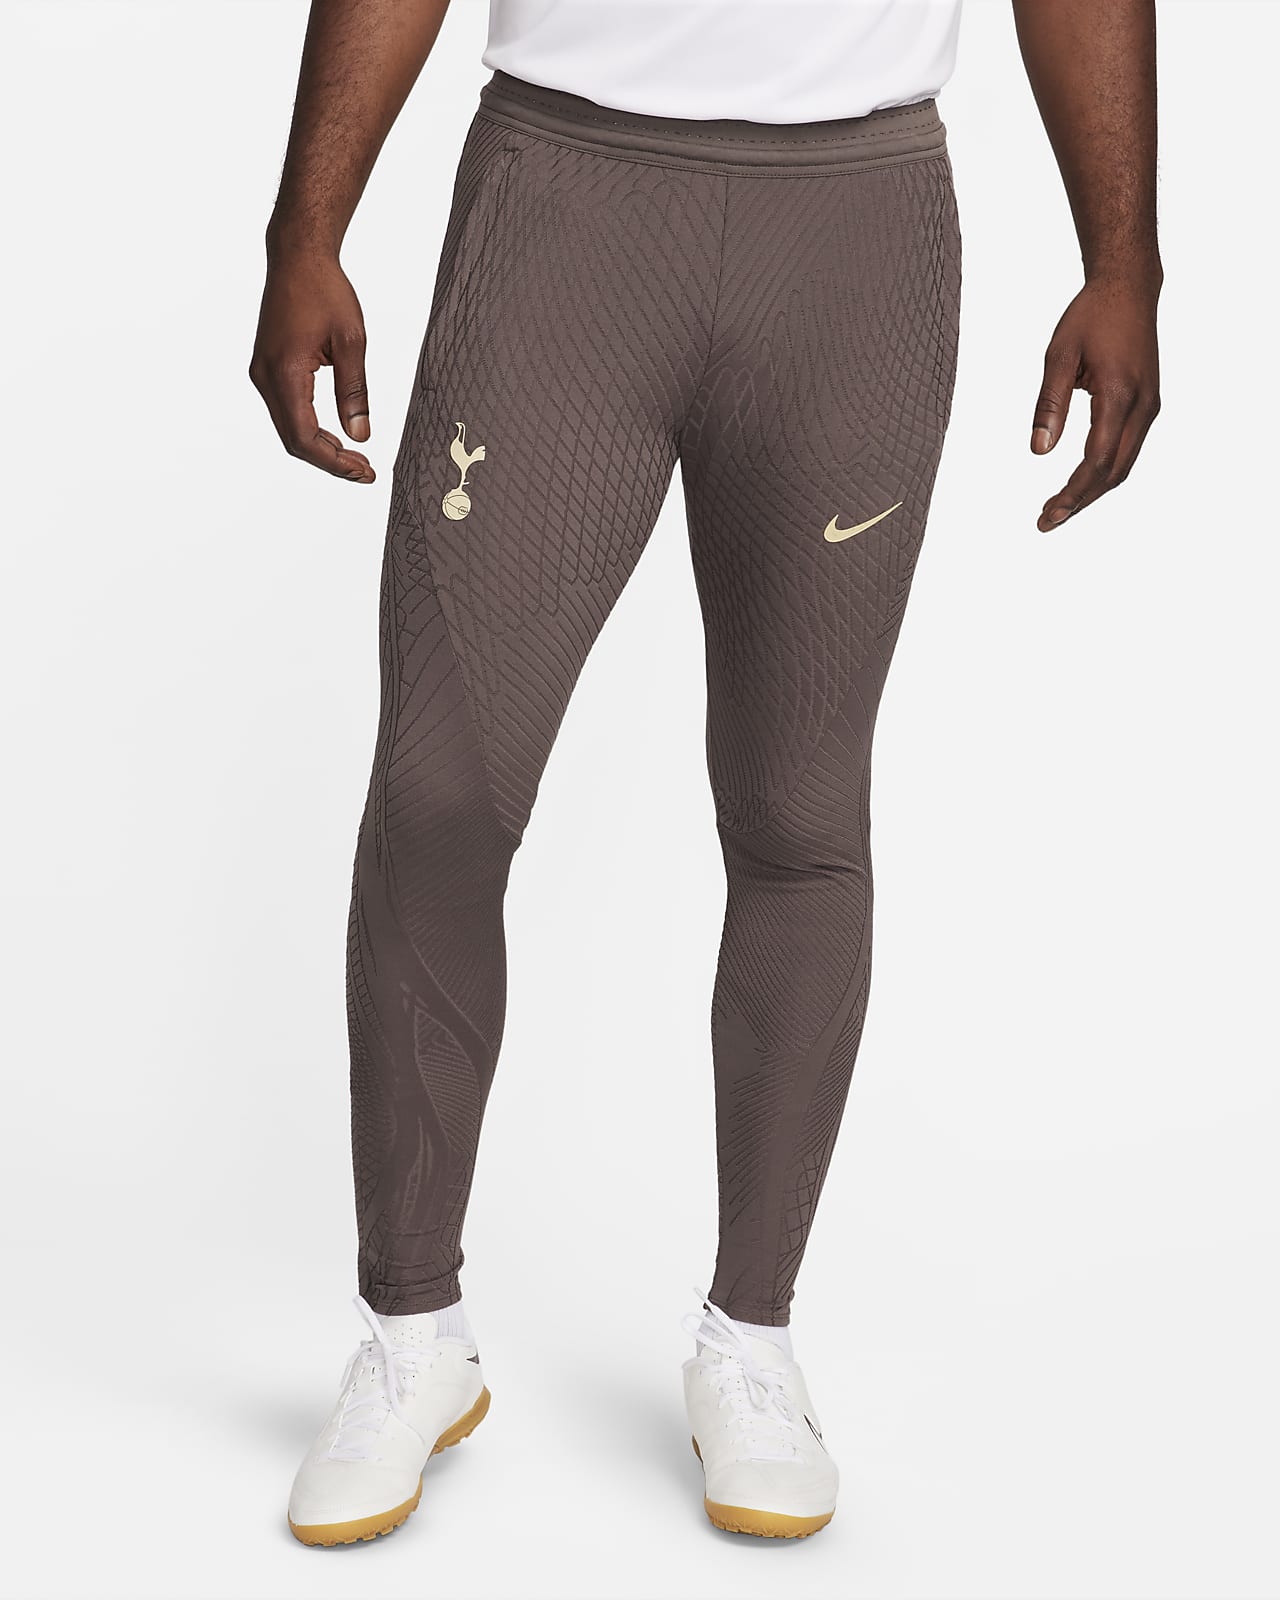 Fotbollsbyxor i stickat material Tottenham Hotspur Strike Elite (tredjeställ) Nike Dri-FIT ADV för män